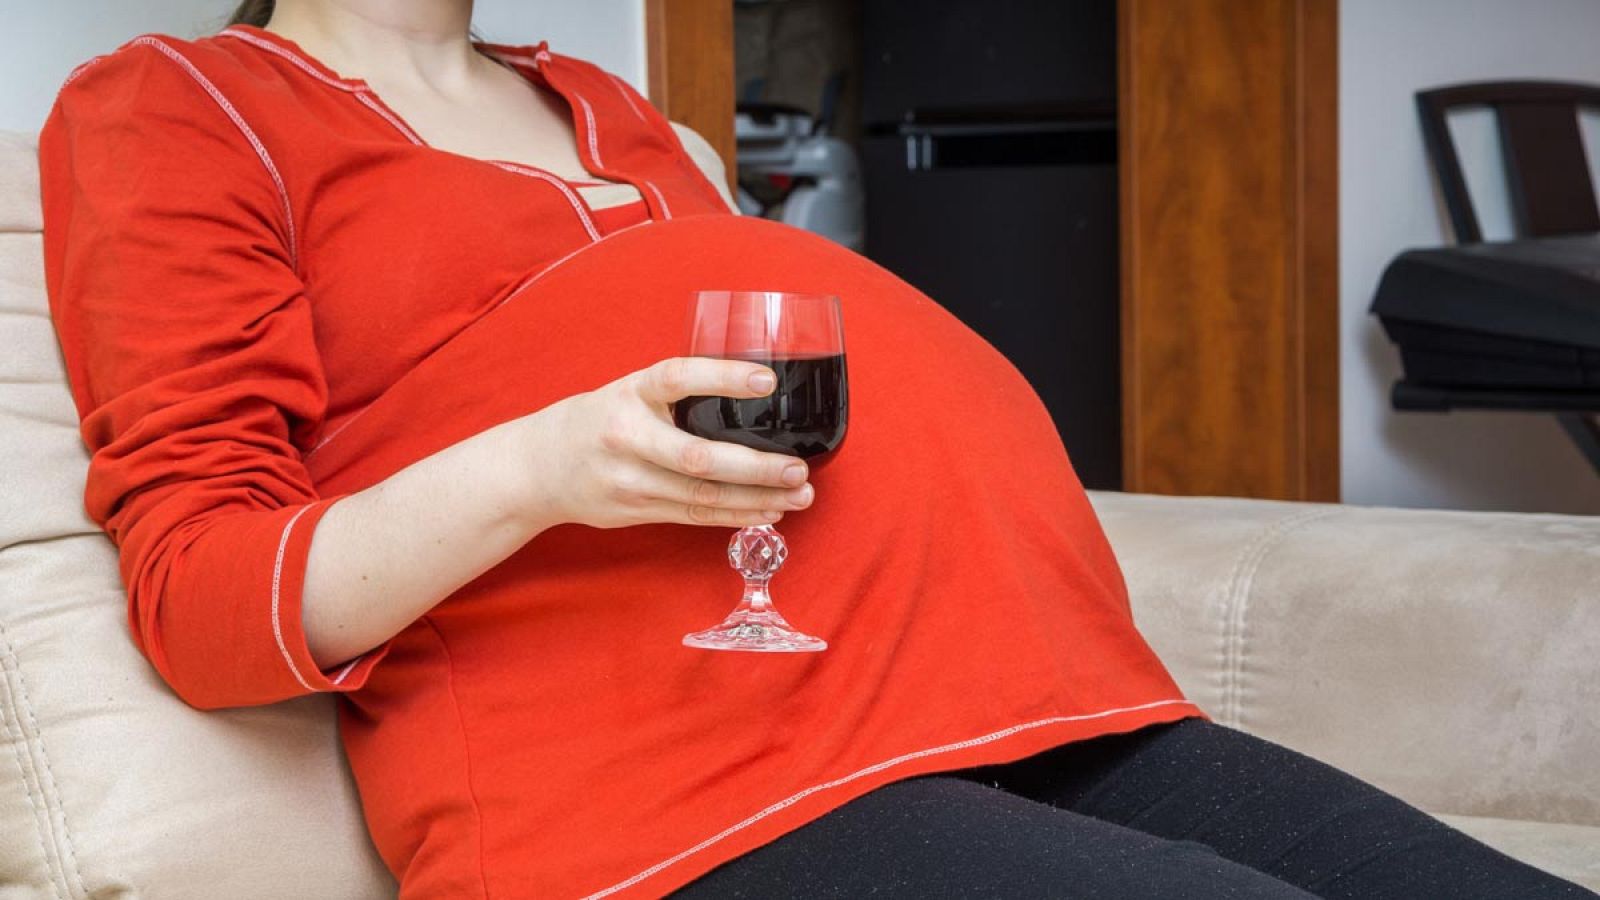 Beber alcohol, aunque sea una vez a la semana, es suficiente para provocar errores neuronales graves en el feto.